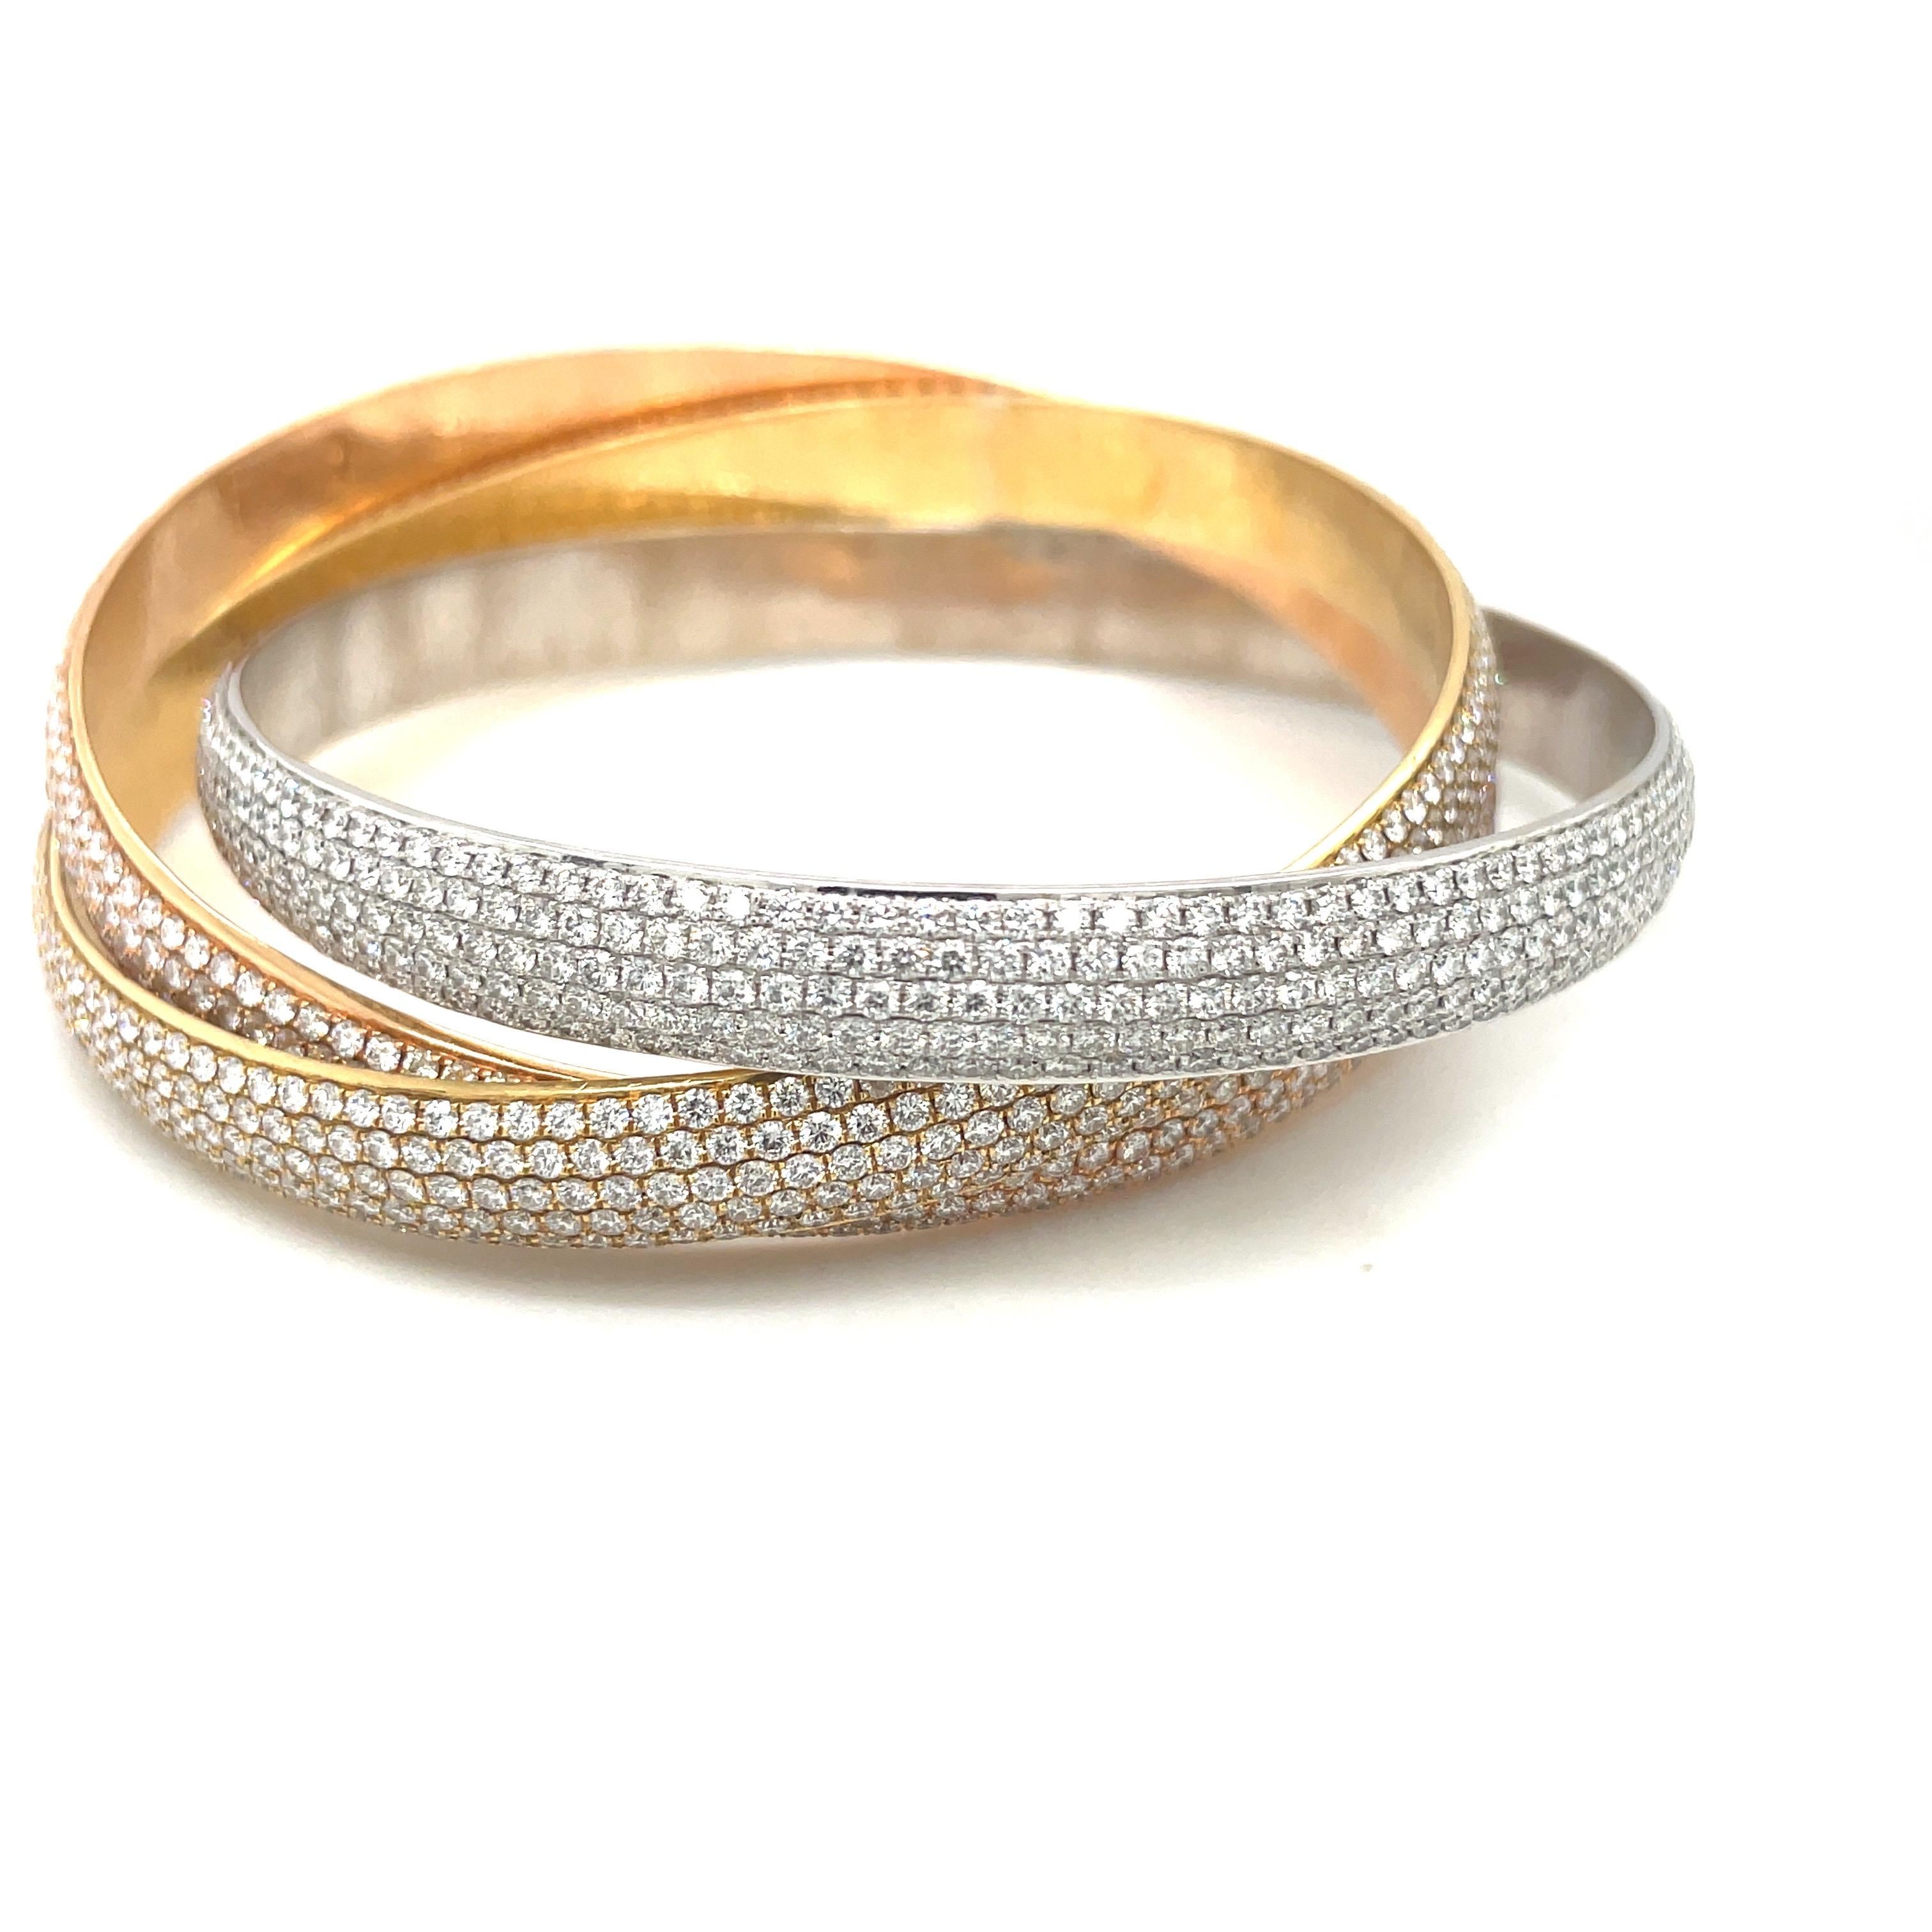 Conçu en or jaune, rose et blanc 18 carats, ce bracelet bangle roulant reste classique. Le bracelet est serti de 28,00 carats de diamants ronds de taille brillant. Chaque bracelet comporte 5 rangées de diamants.
La mesure intérieure est de 2,5